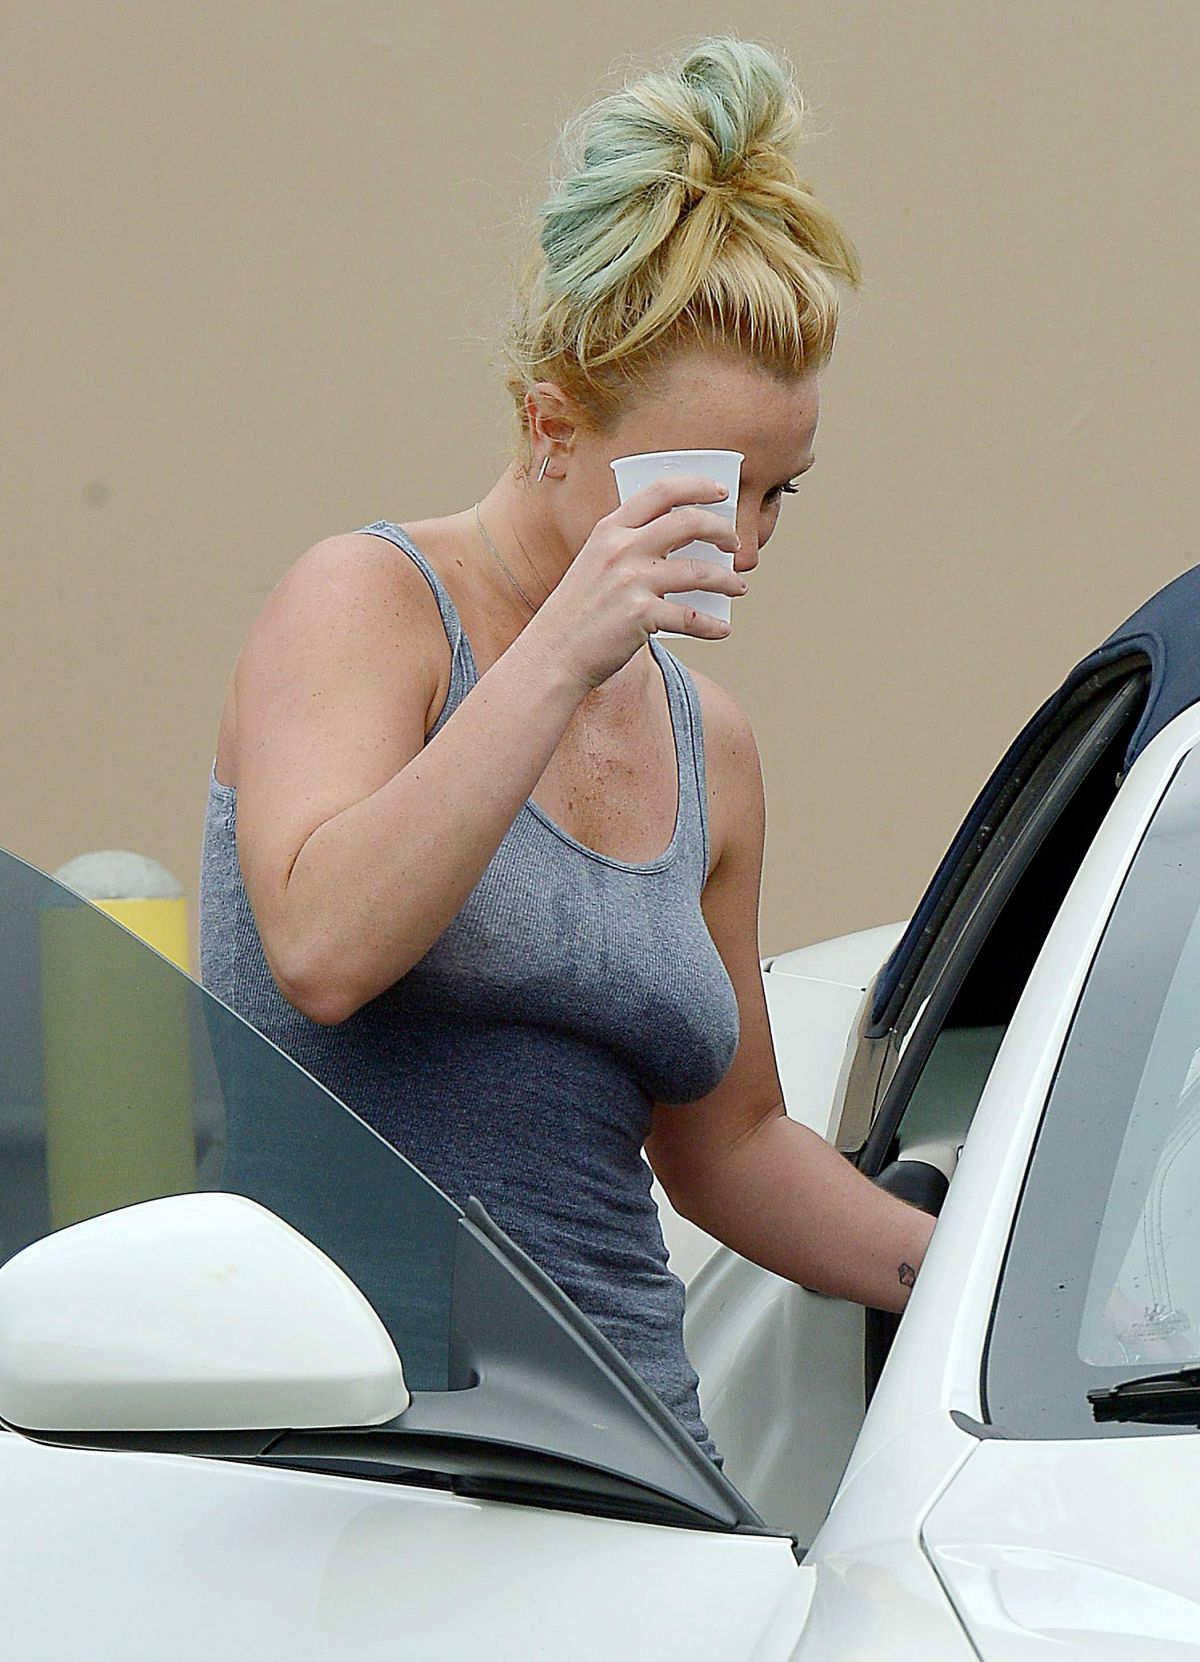 Britney Spears 2008 Paparazzi